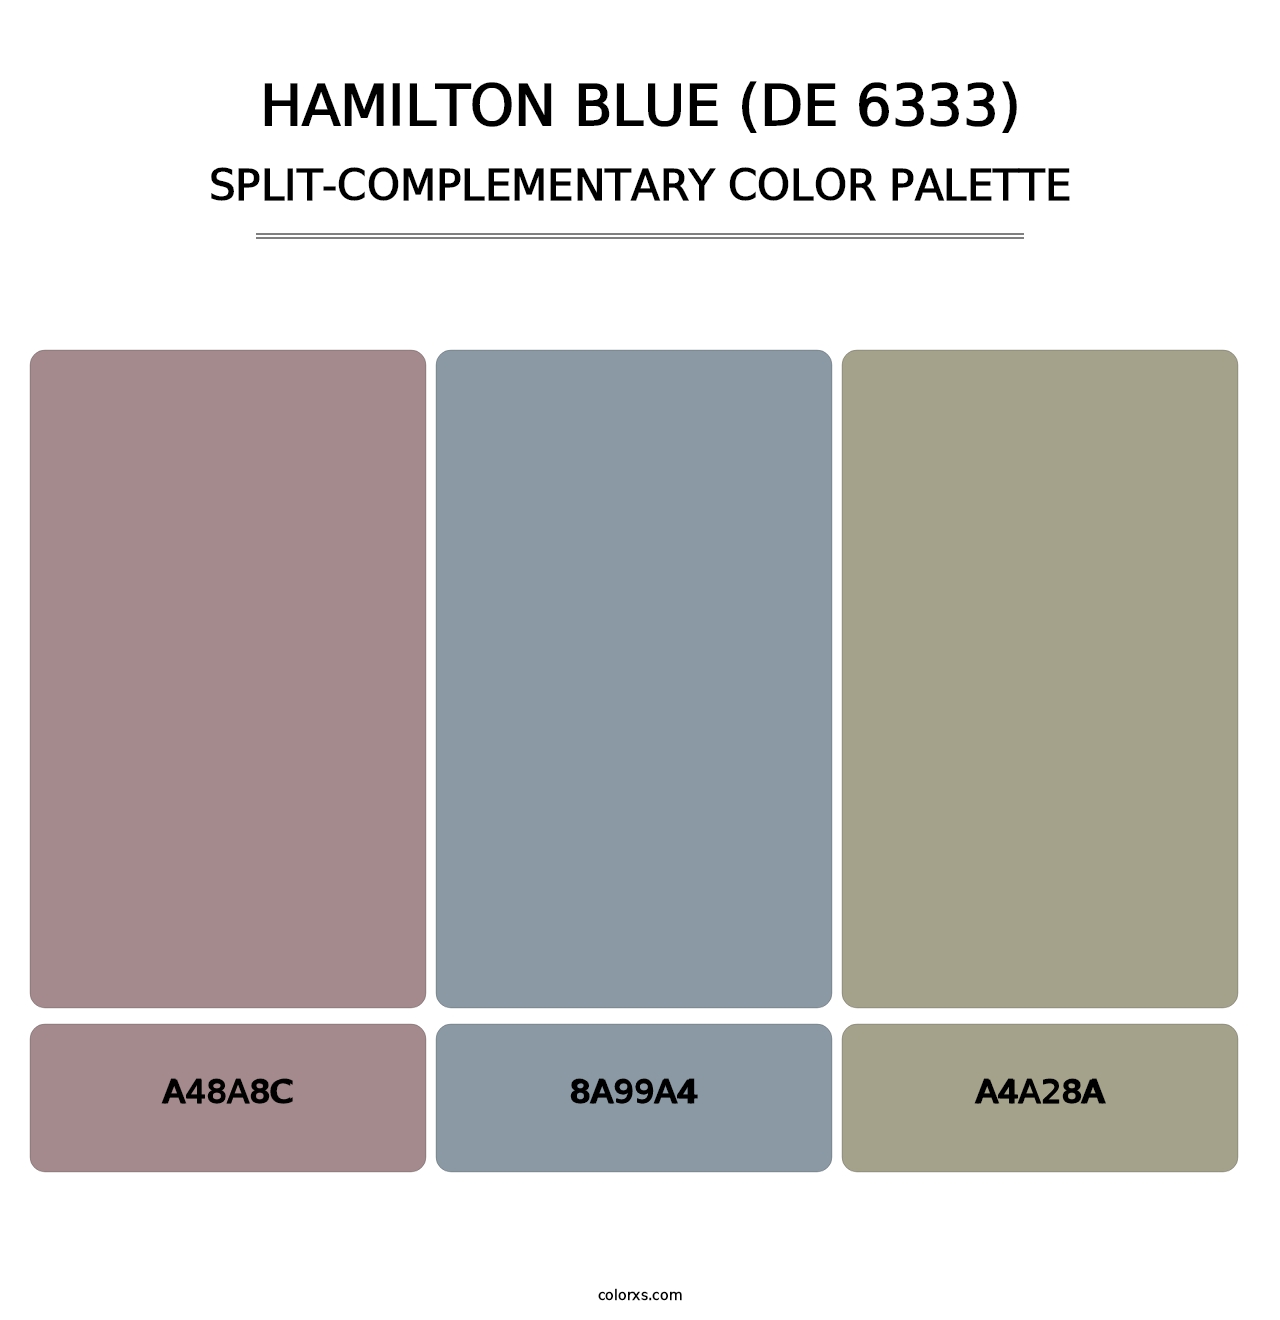 Hamilton Blue (DE 6333) - Split-Complementary Color Palette